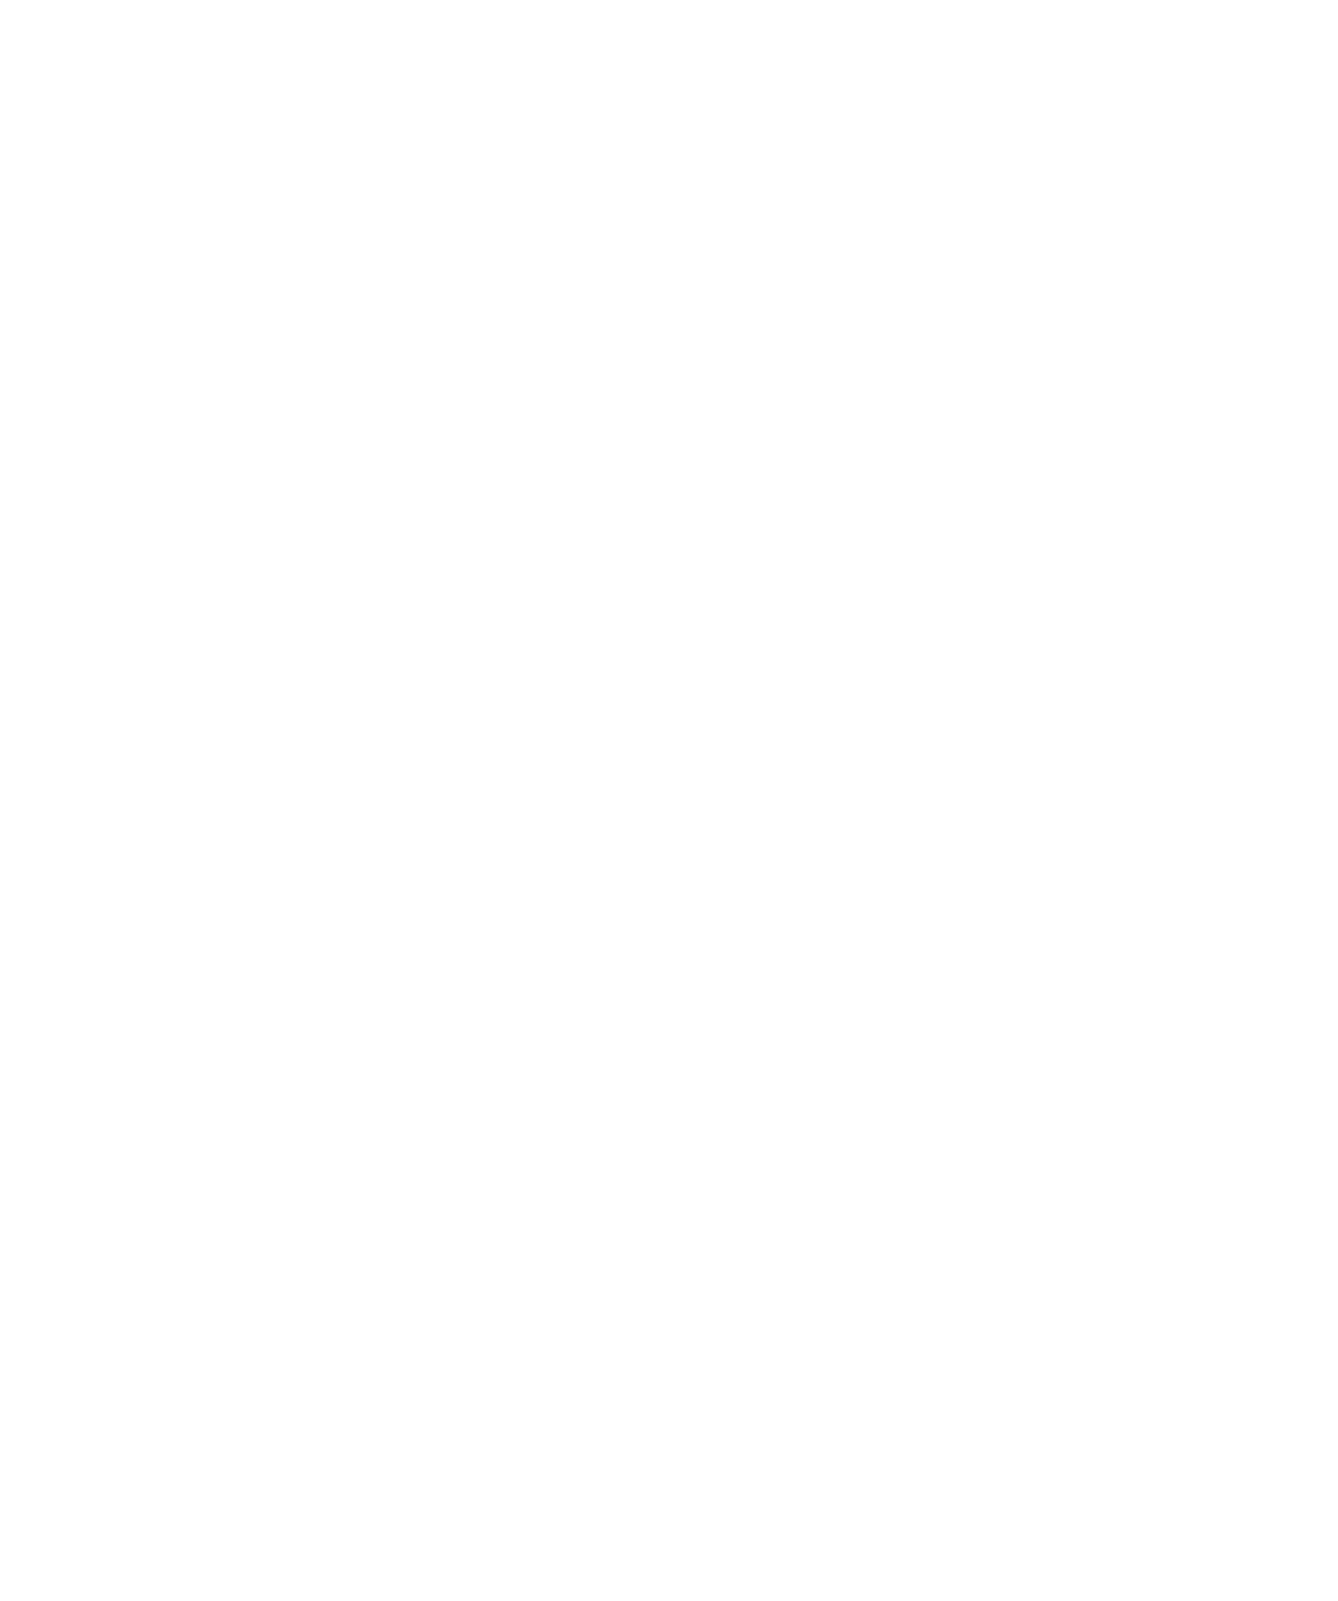 Centrais Electricas Brasileiras logo for dark backgrounds (transparent PNG)